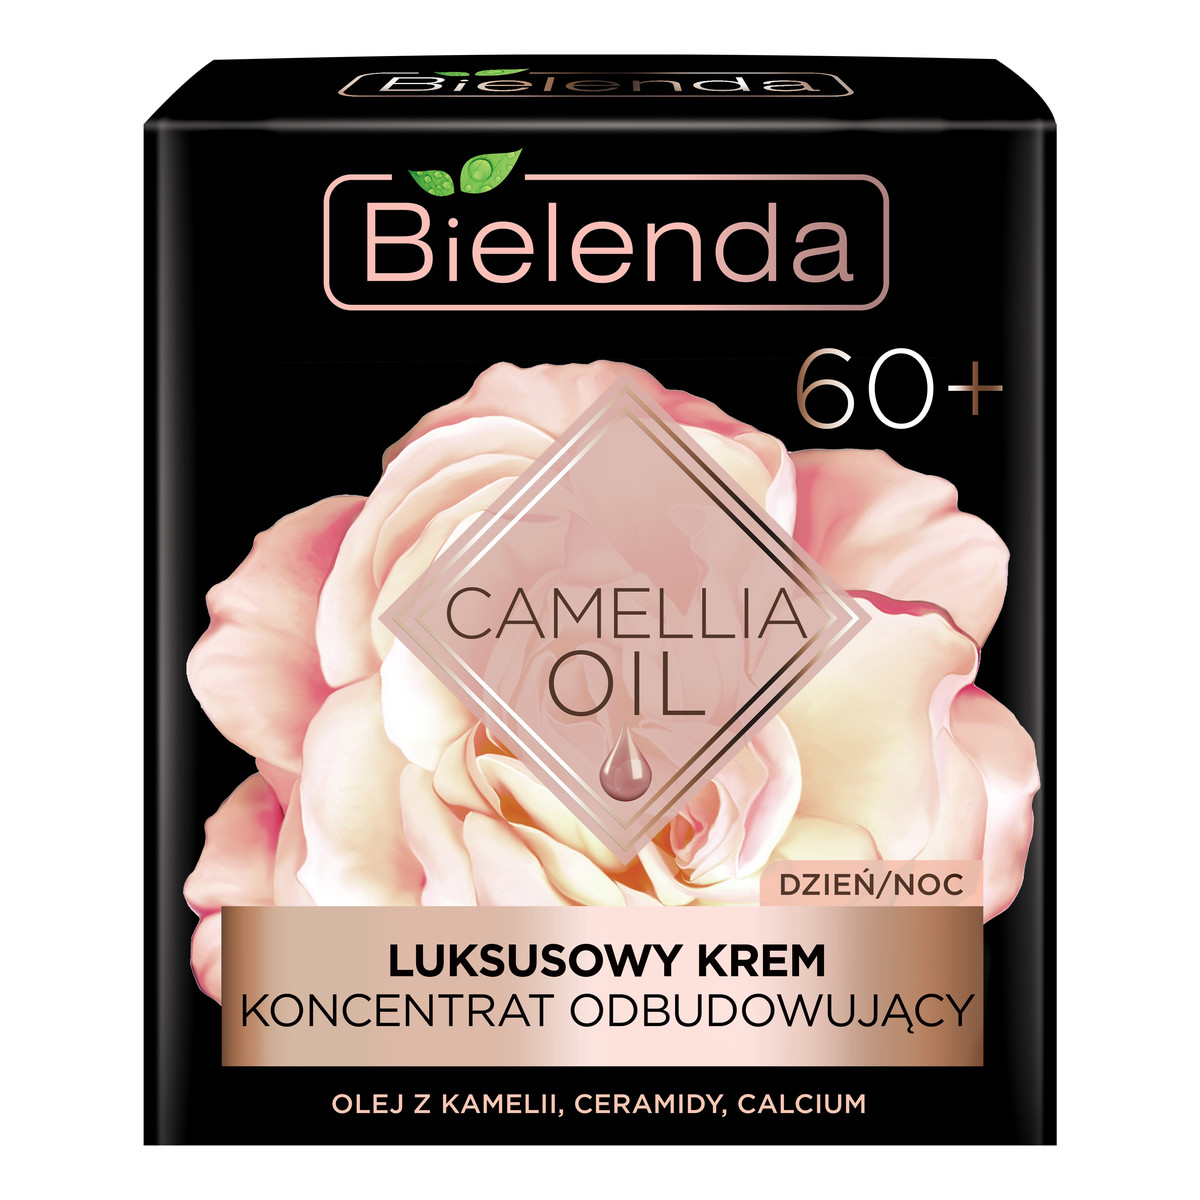 Bielenda Camellia Oil 60+ Luksusowy Krem-koncentrat odbudowujący na dzień i noc 50ml